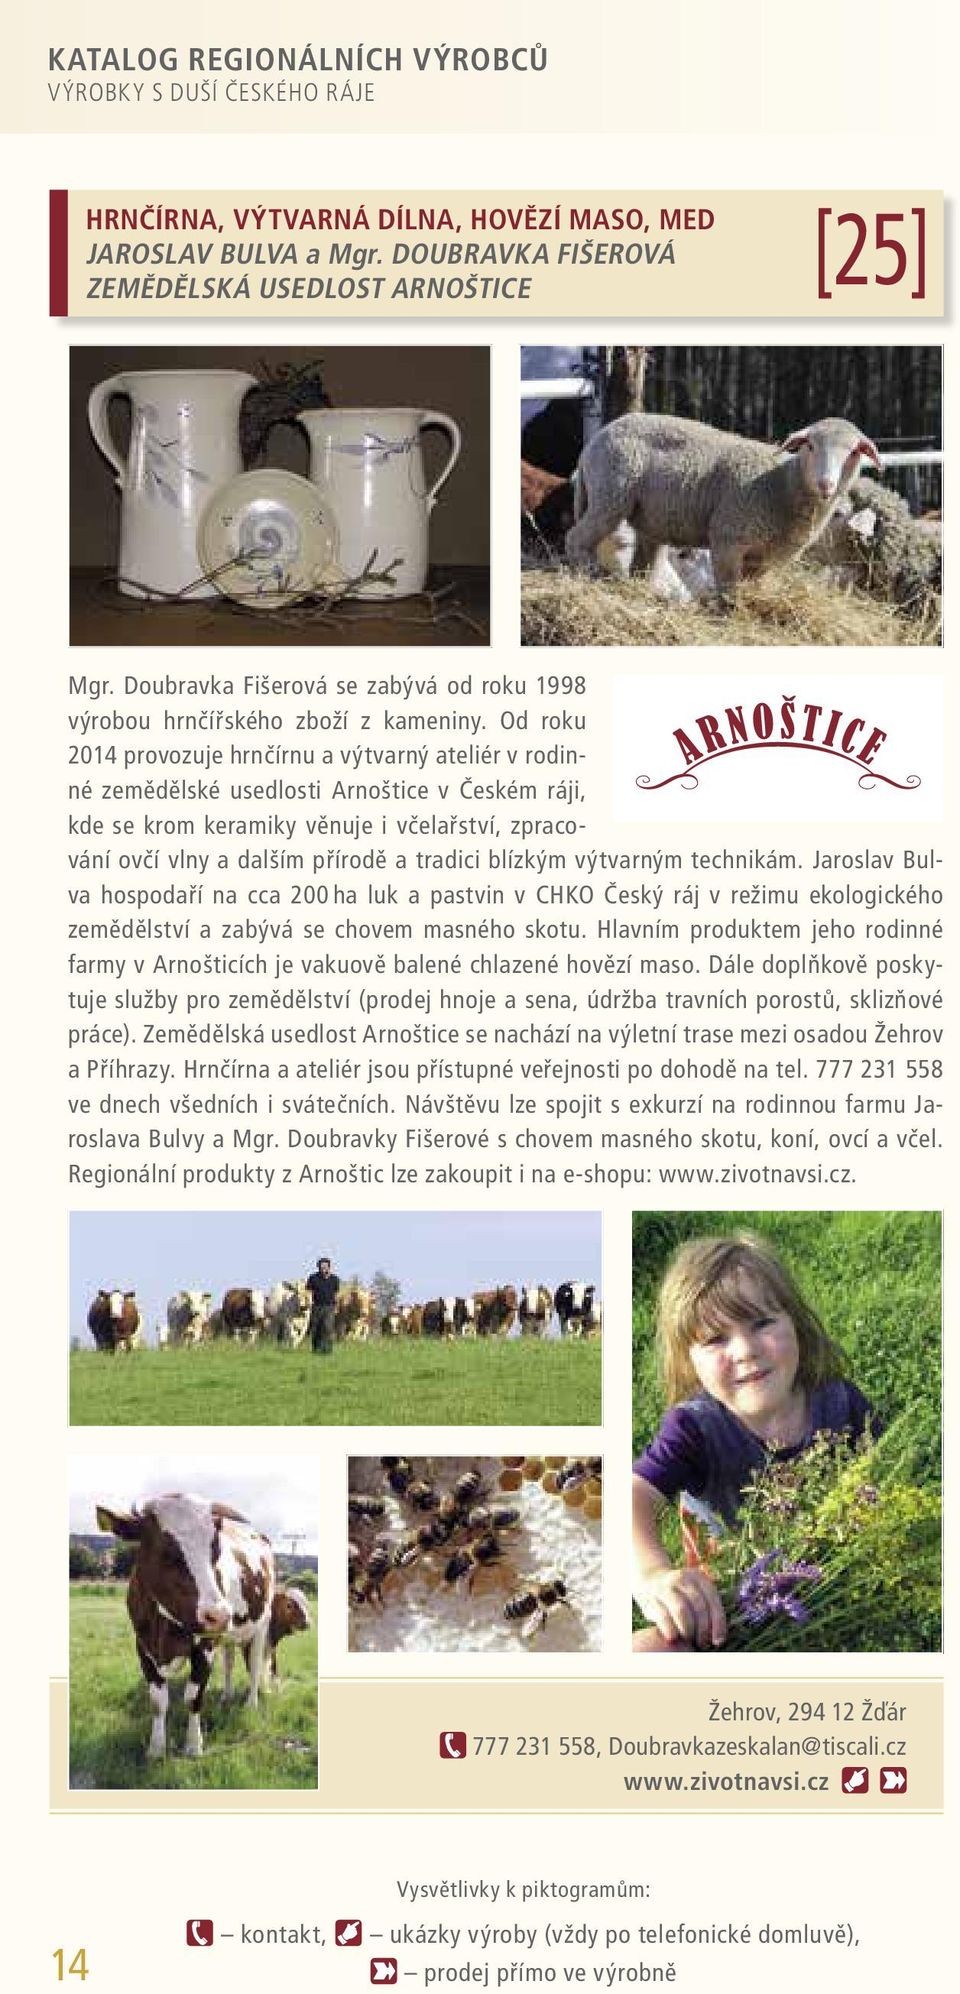 Od roku 2014 provozuje hrnčírnu a výtvarný ateliér v rodinné zemědělské usedlosti Arnoštice v Českém ráji, kde se krom keramiky věnuje i včelařství, zpracování ovčí vlny a dalším přírodě a tradici